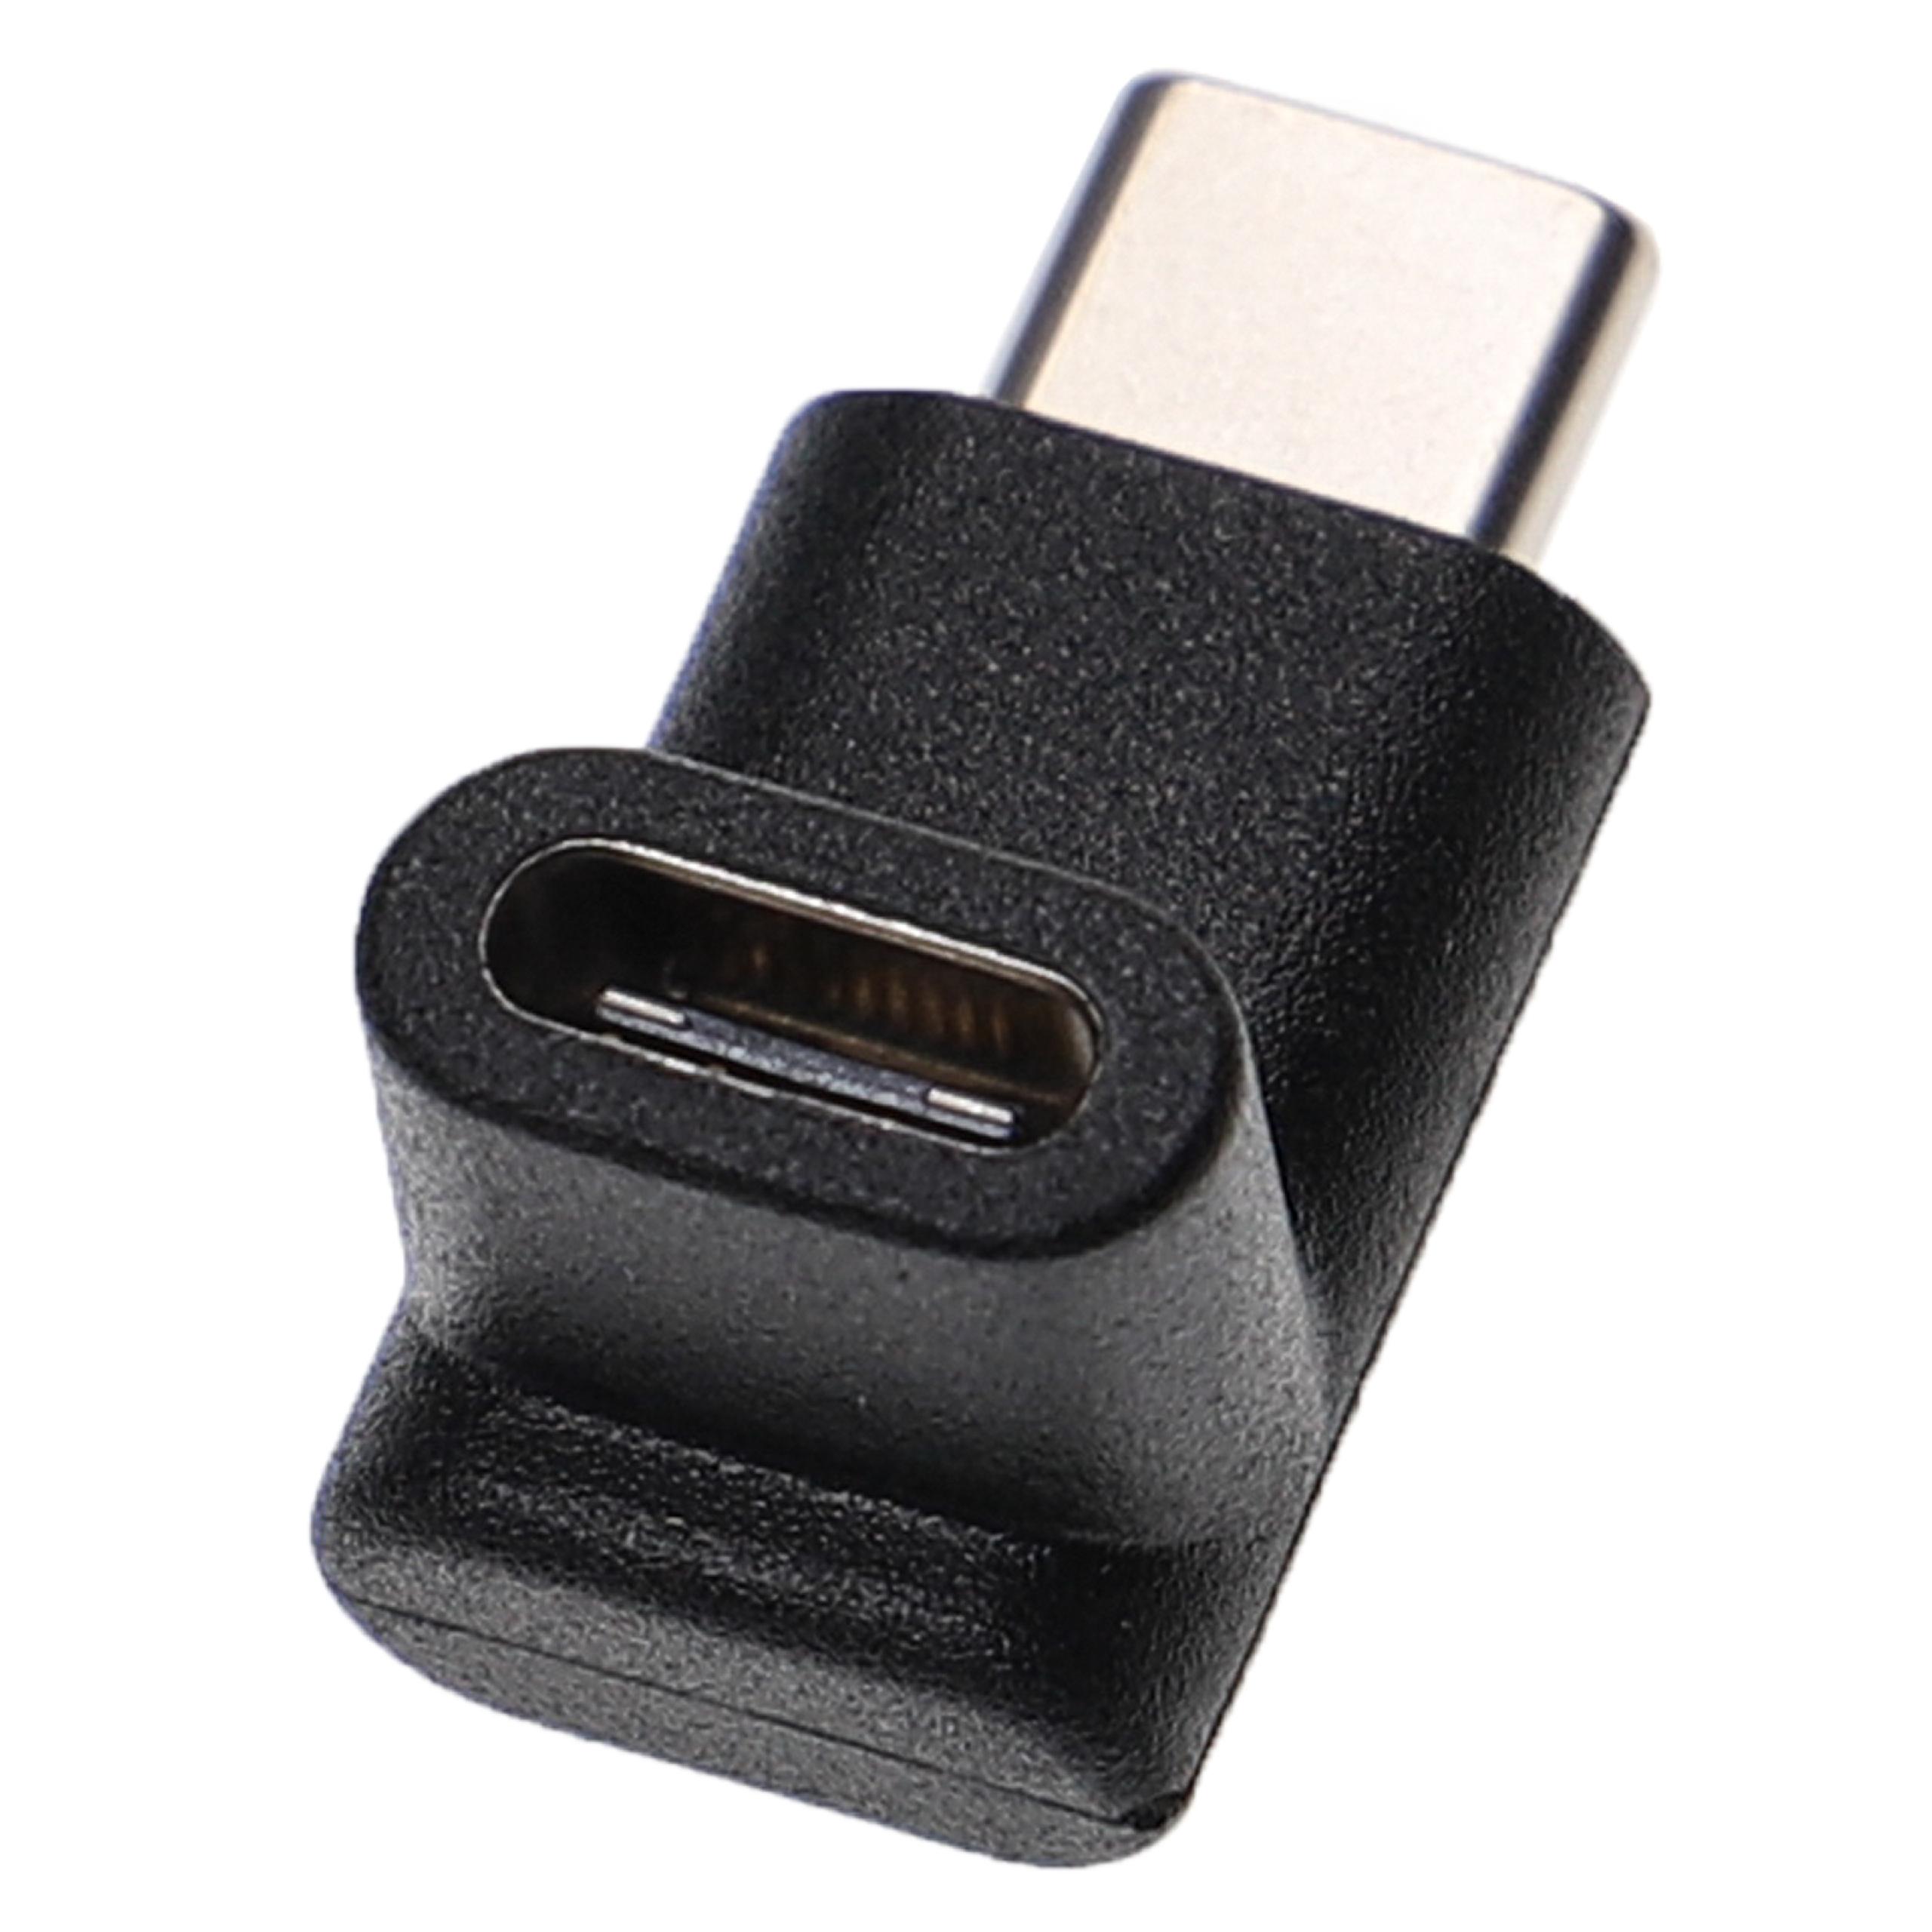 USB C Angle Adapter 90° Angled - Plug to Socket Adapter